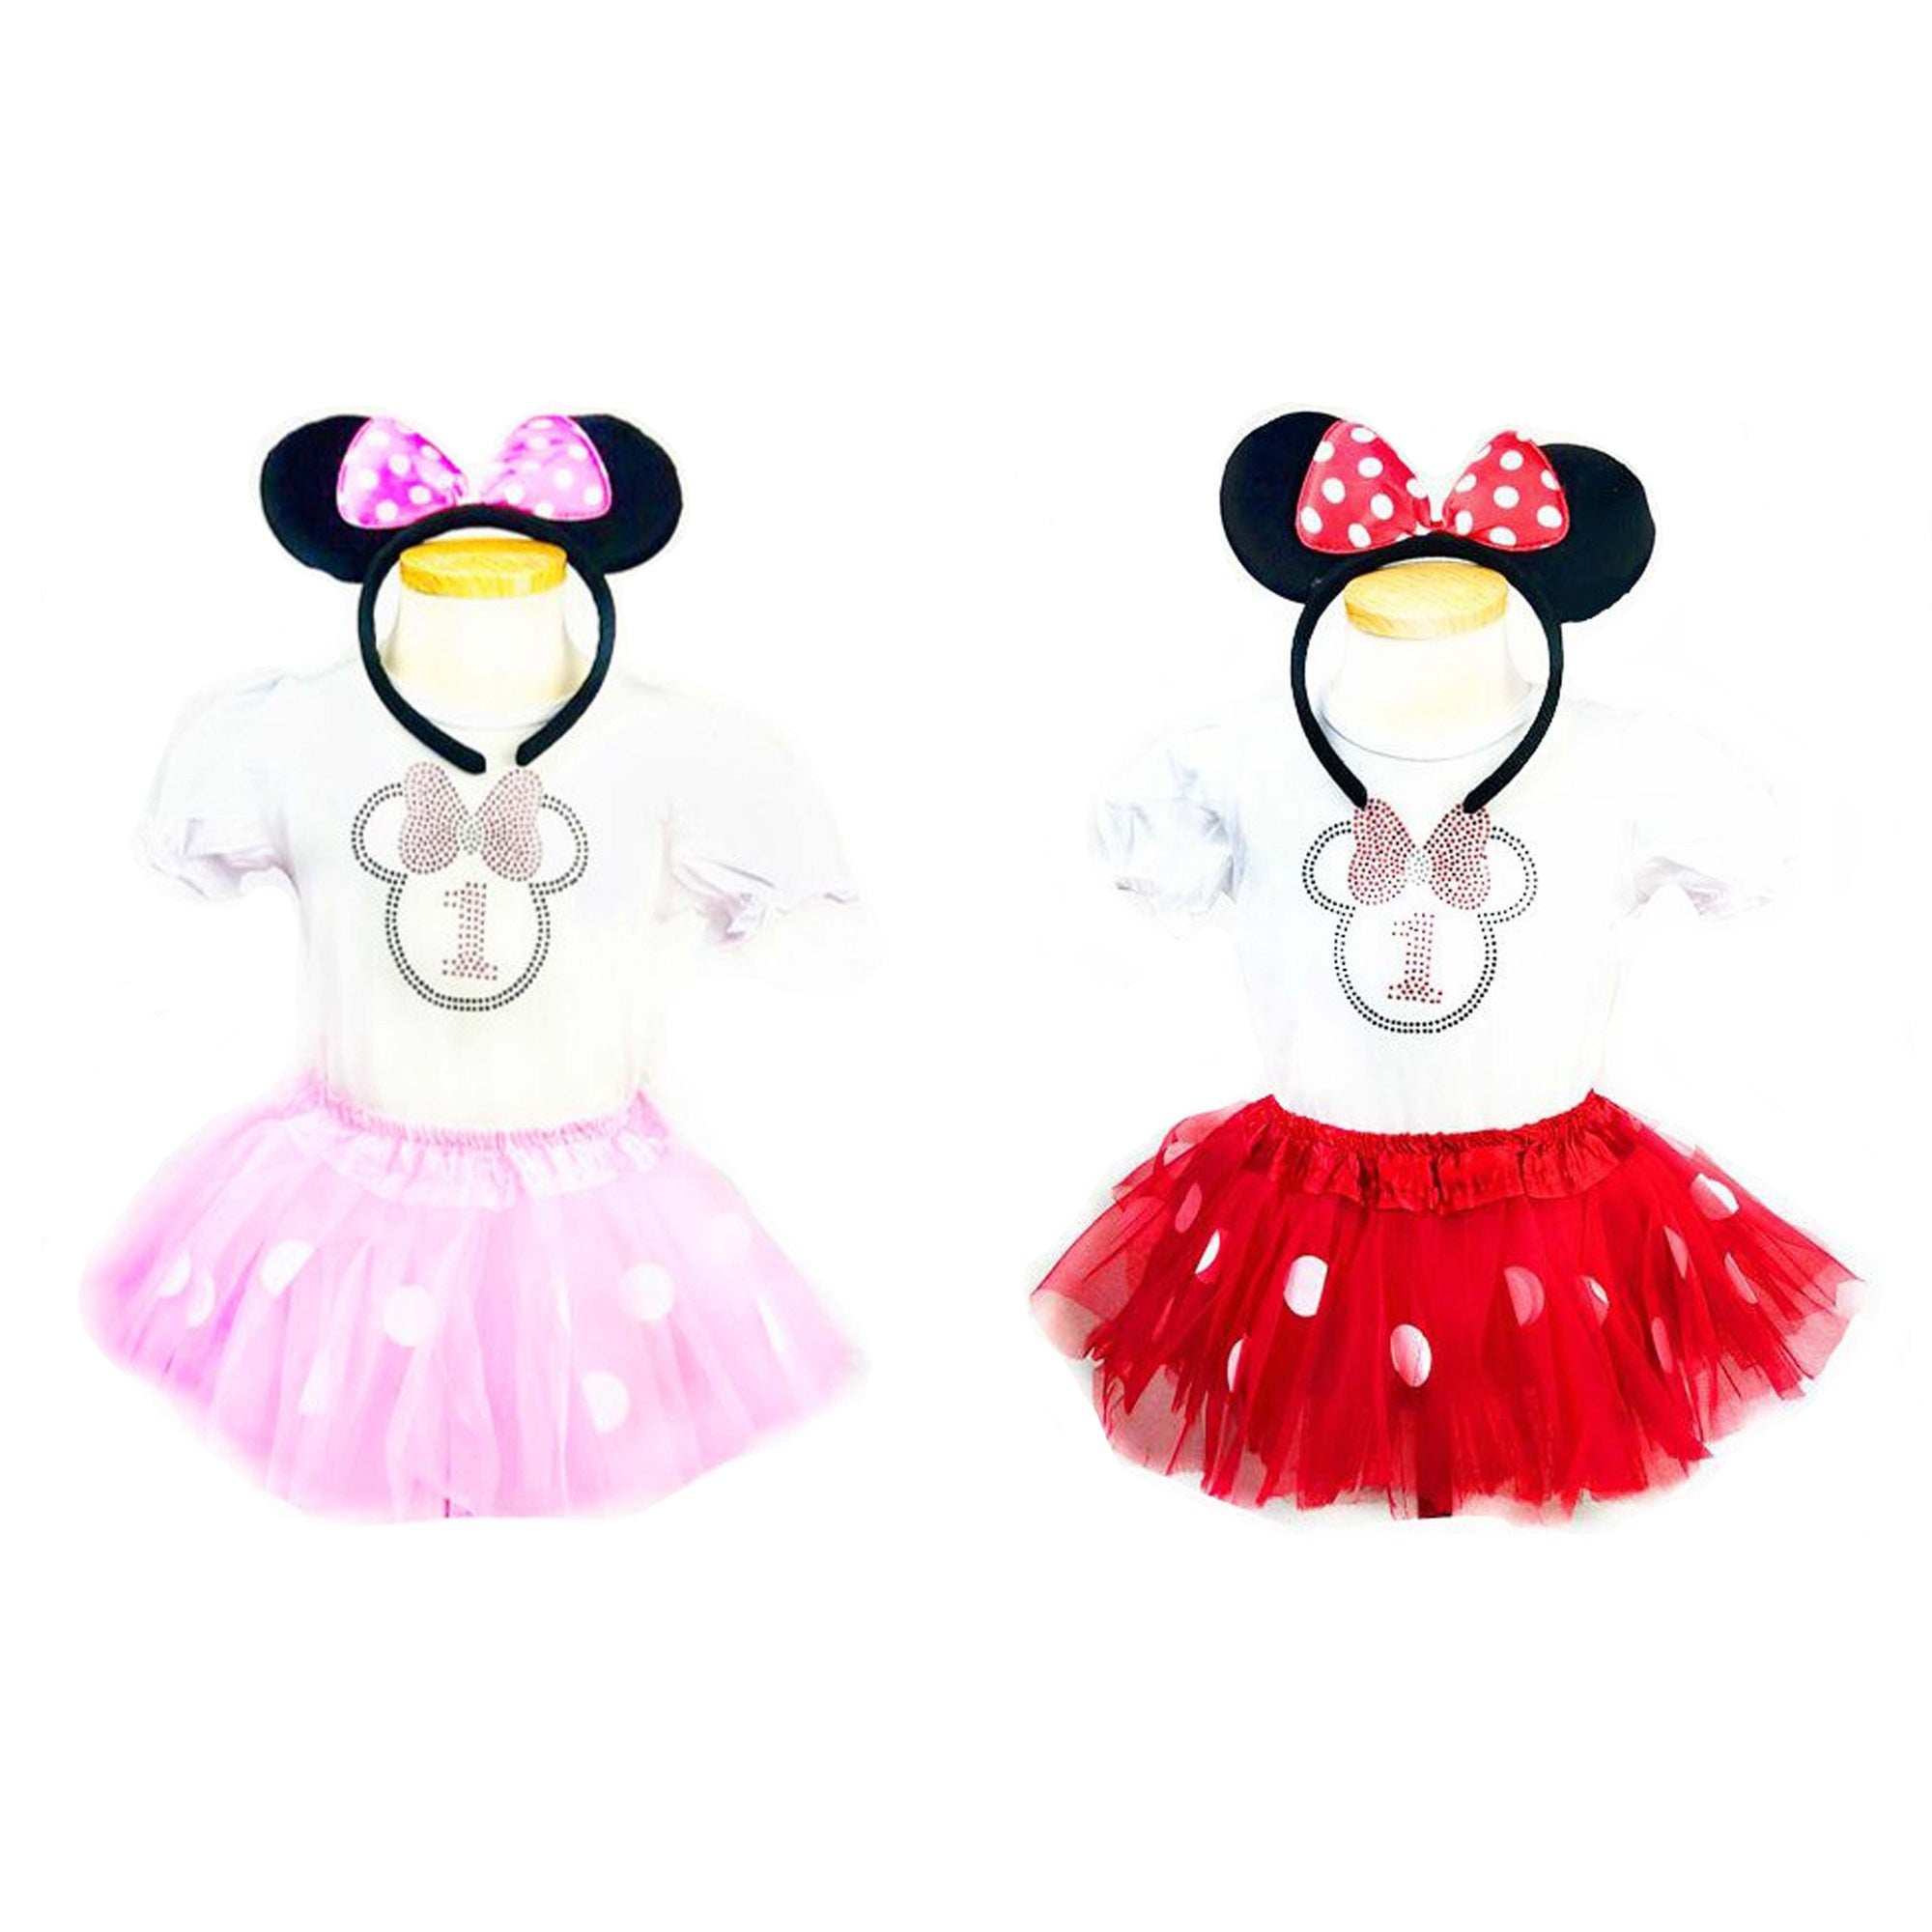 Ensemble d'accessoires de Minnie Mouse pour bébés